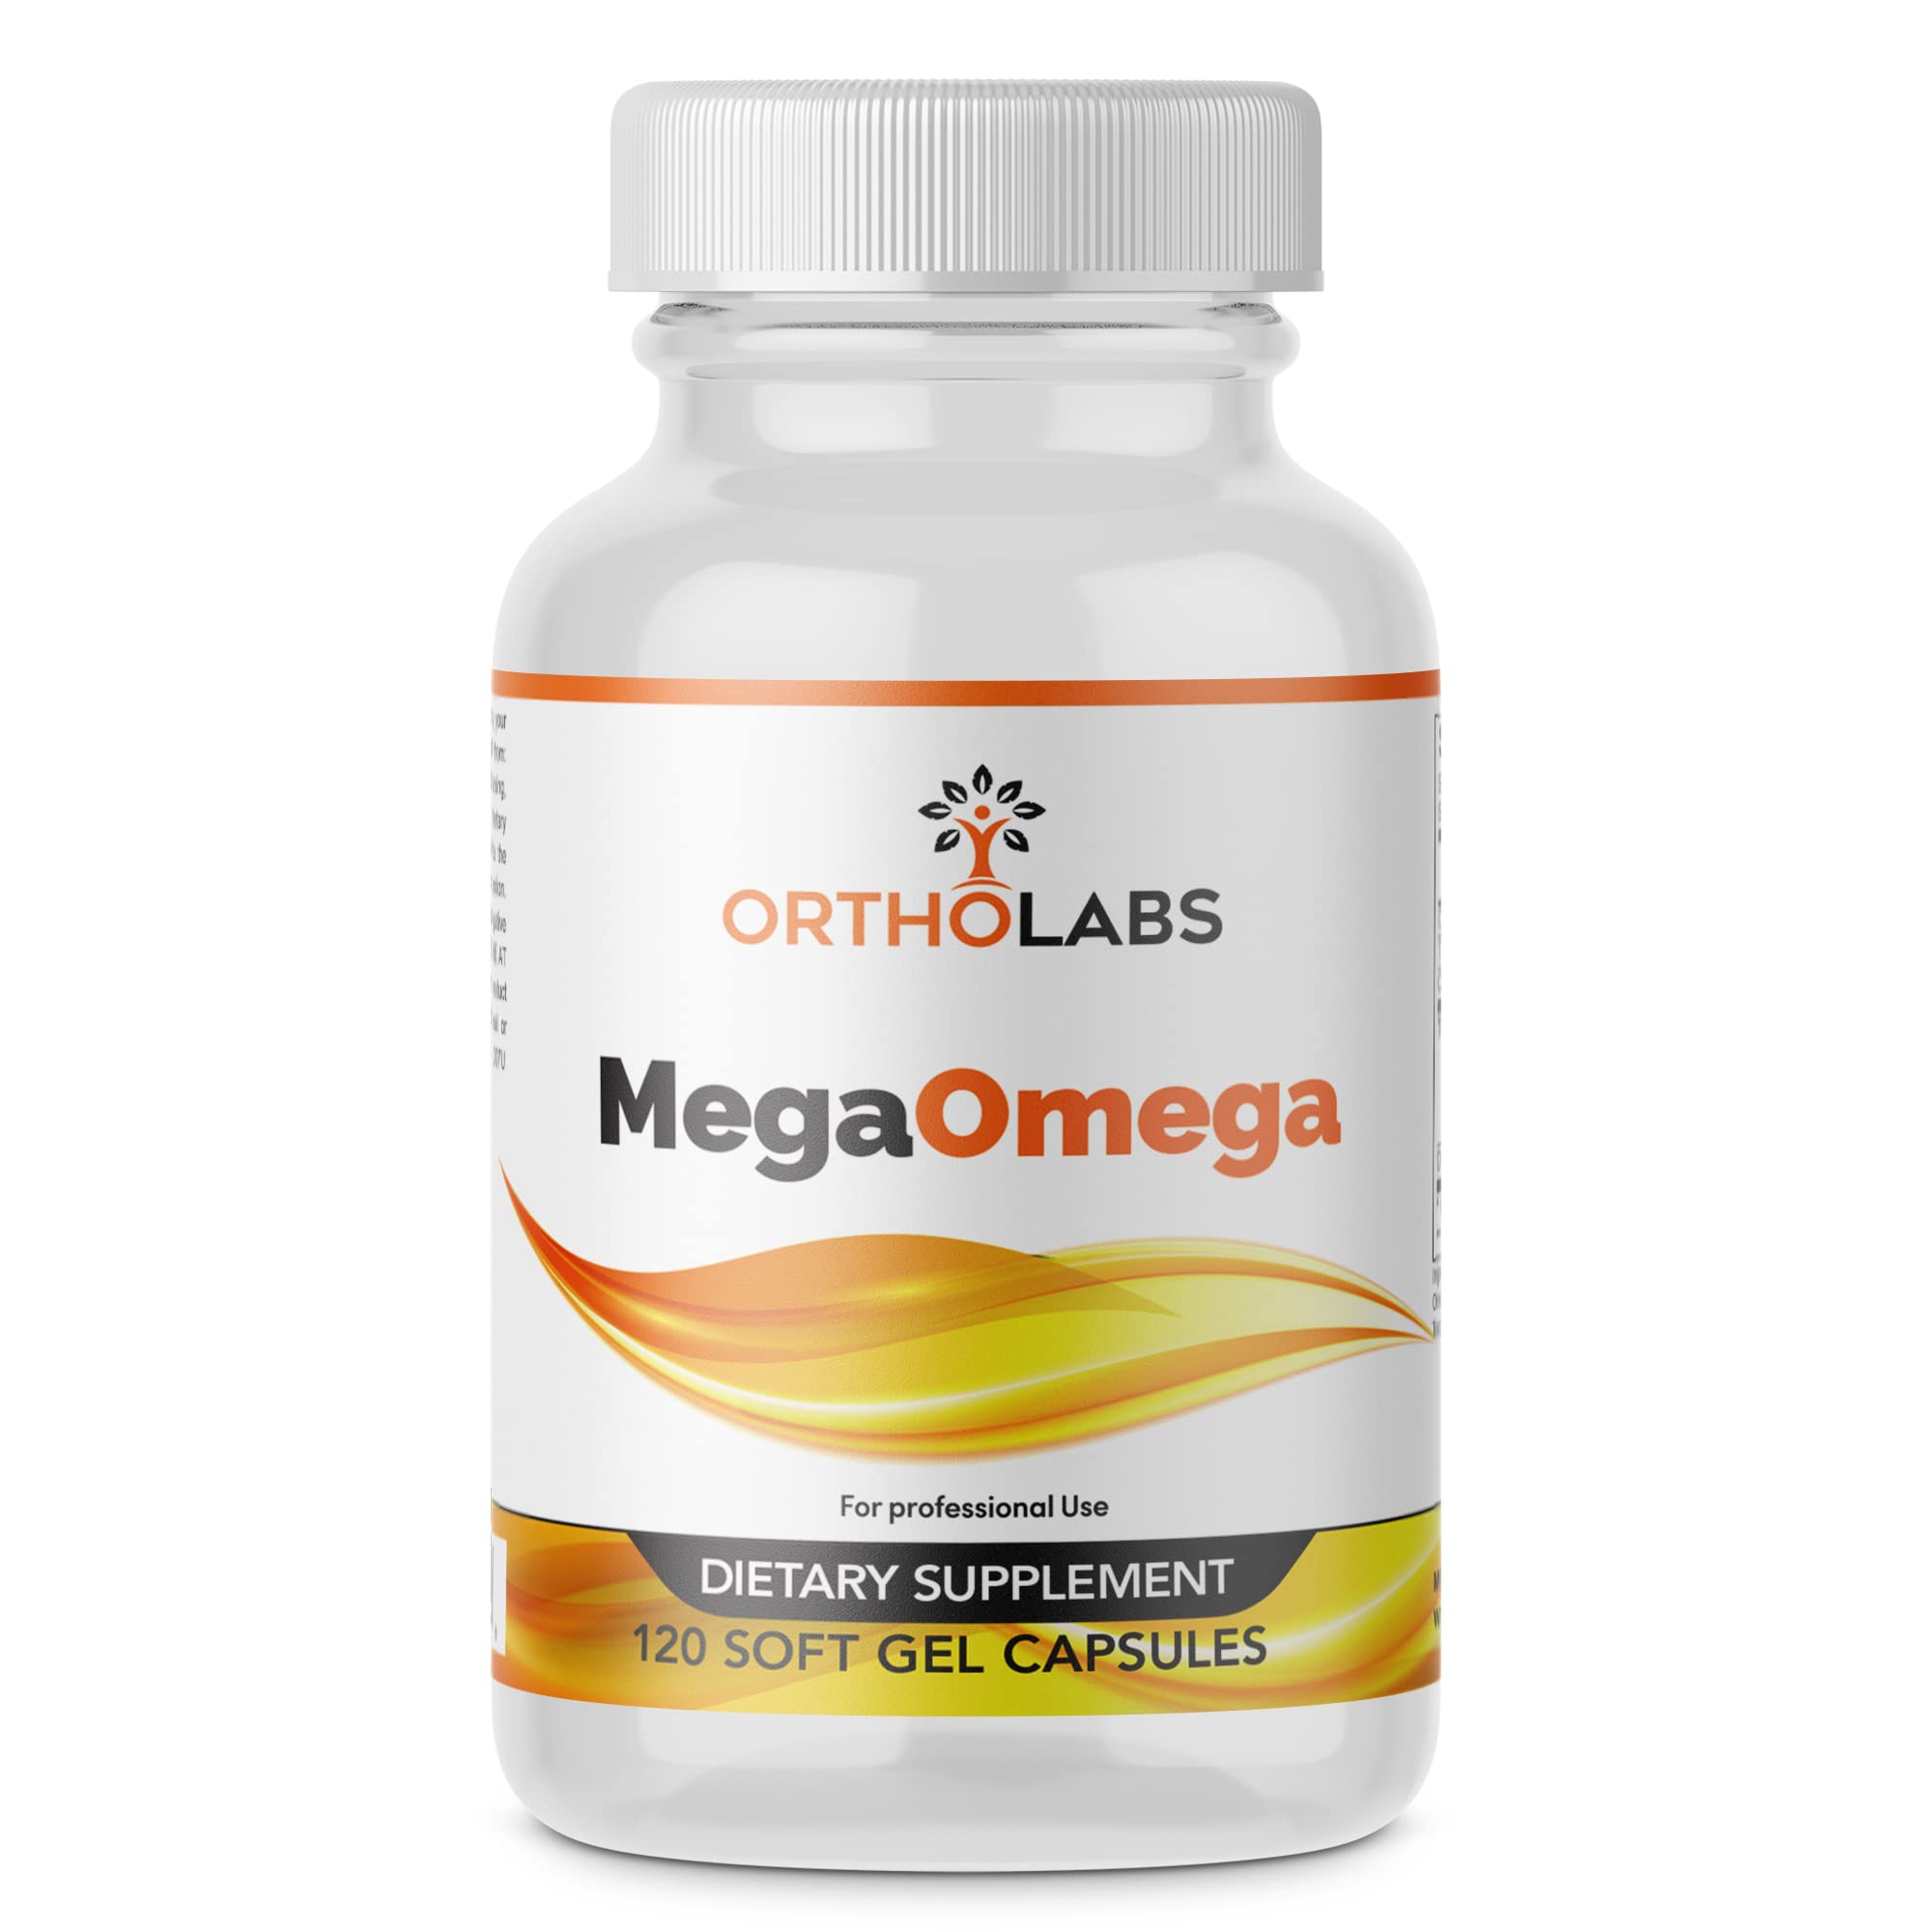 OrthoLabs Product's - Orthoomega 820's Based Formula , Omega 3 Fish Oil Megaomega (120)